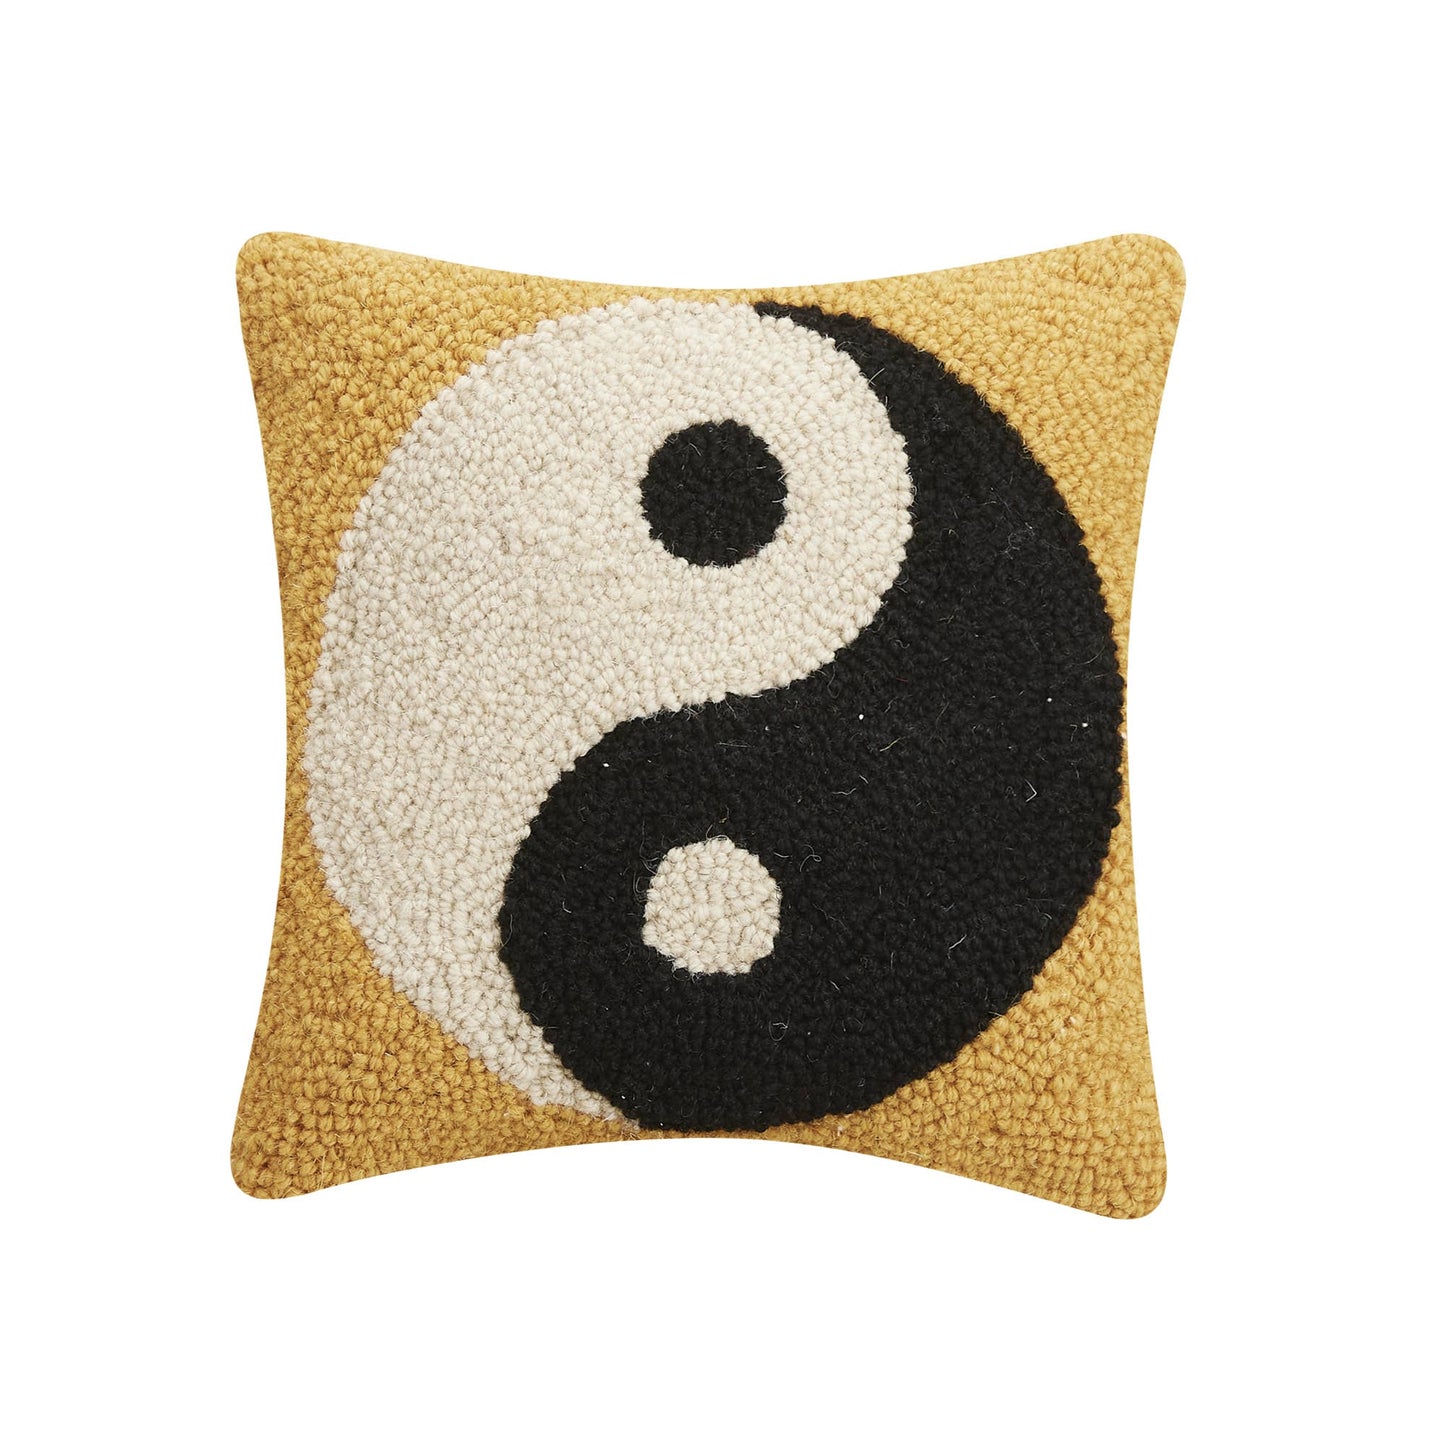 Yin-Yang Throw Pillow